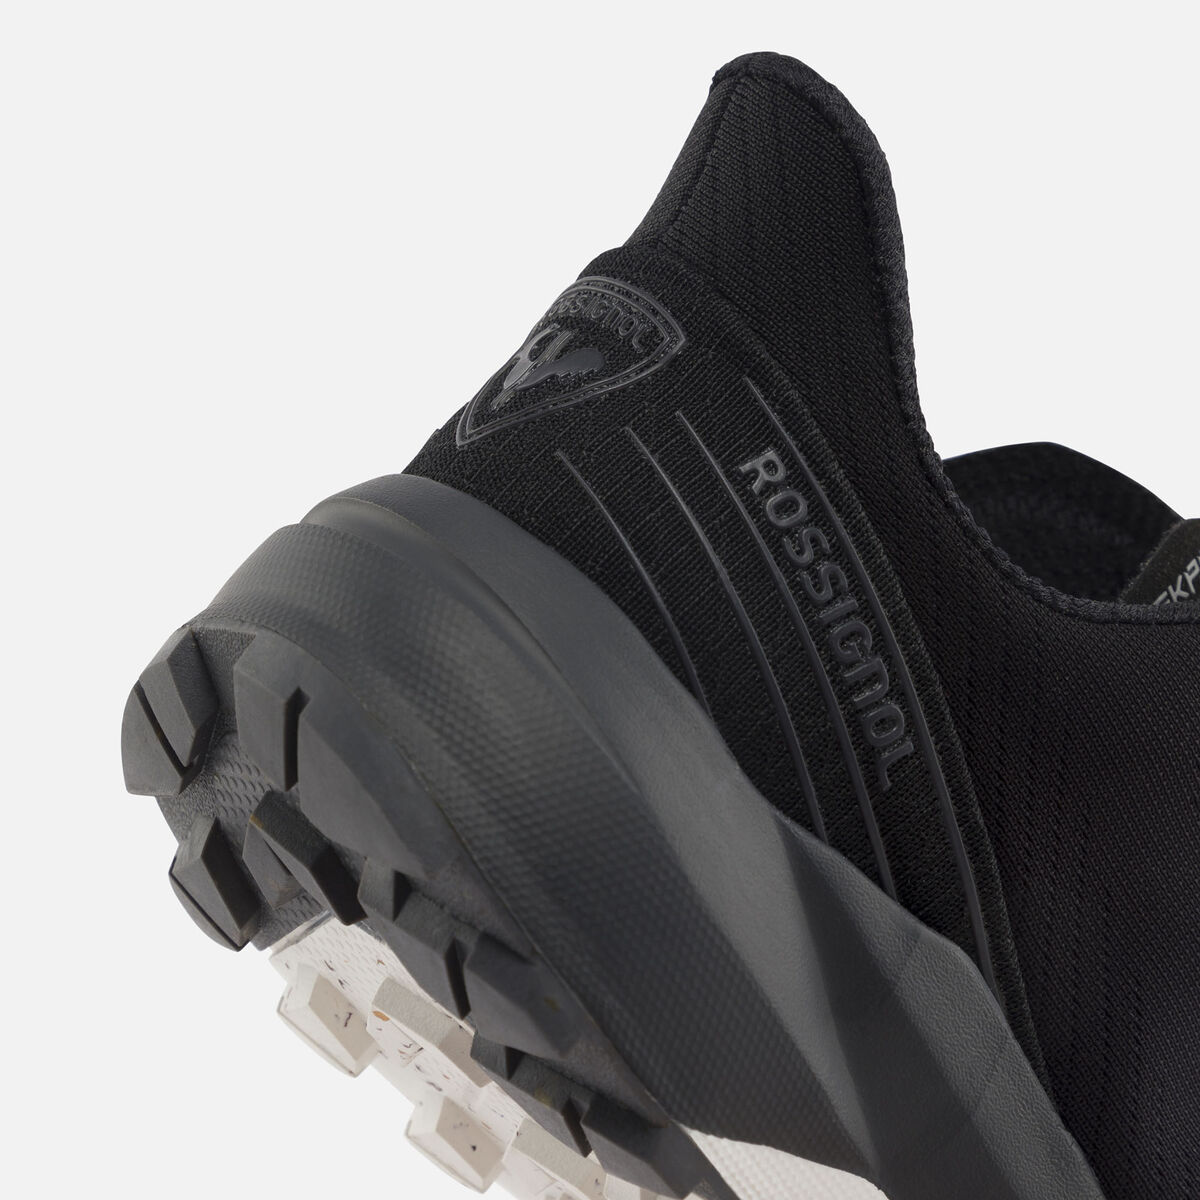 Rossignol Chaussures SKPR 2.0 Active Femme black